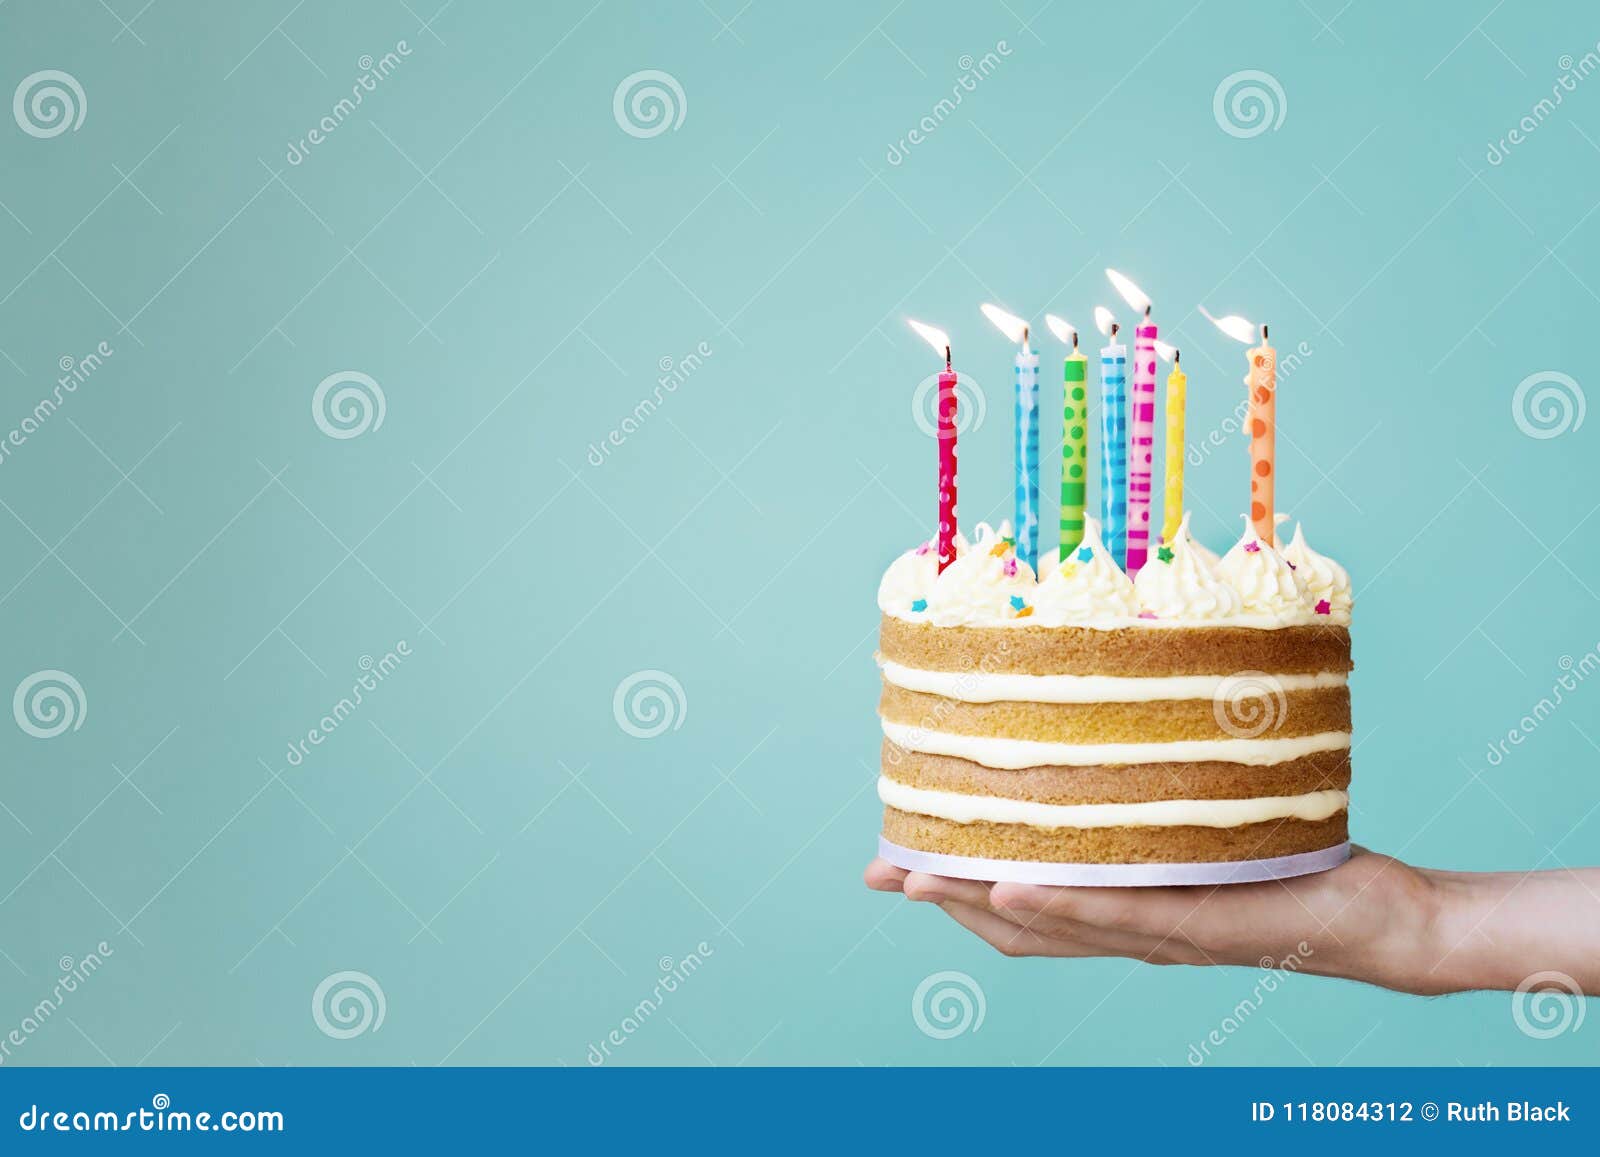 anker toewijding alcohol De Cake Van De Verjaardag Met Kleurrijke Kaarsen Stock Foto - Image of  verjaardag, blauw: 118084312